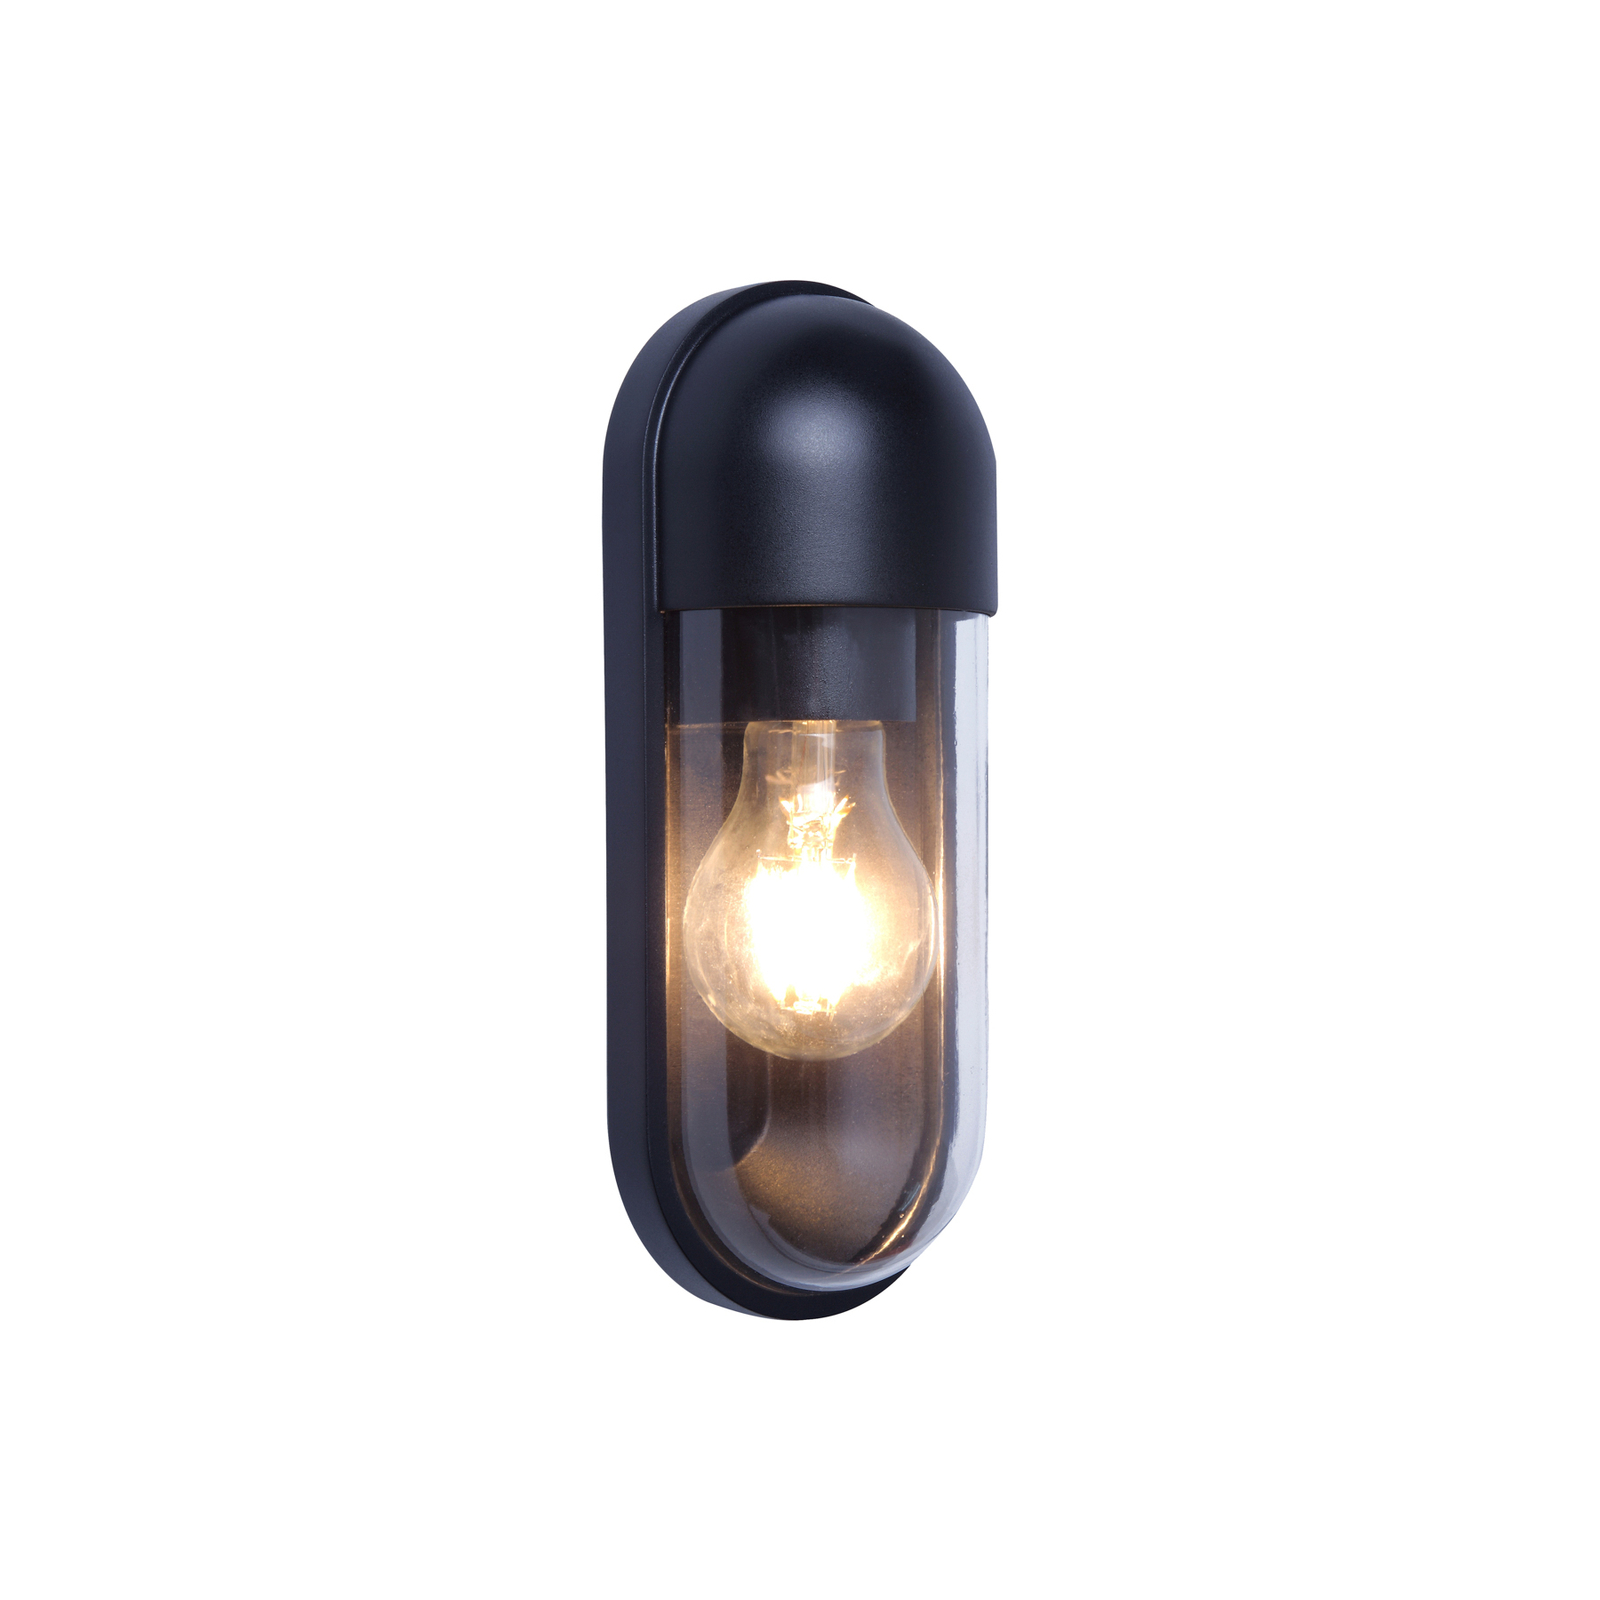 Außenwandlampe Cap, schwarz, Höhe 24 cm